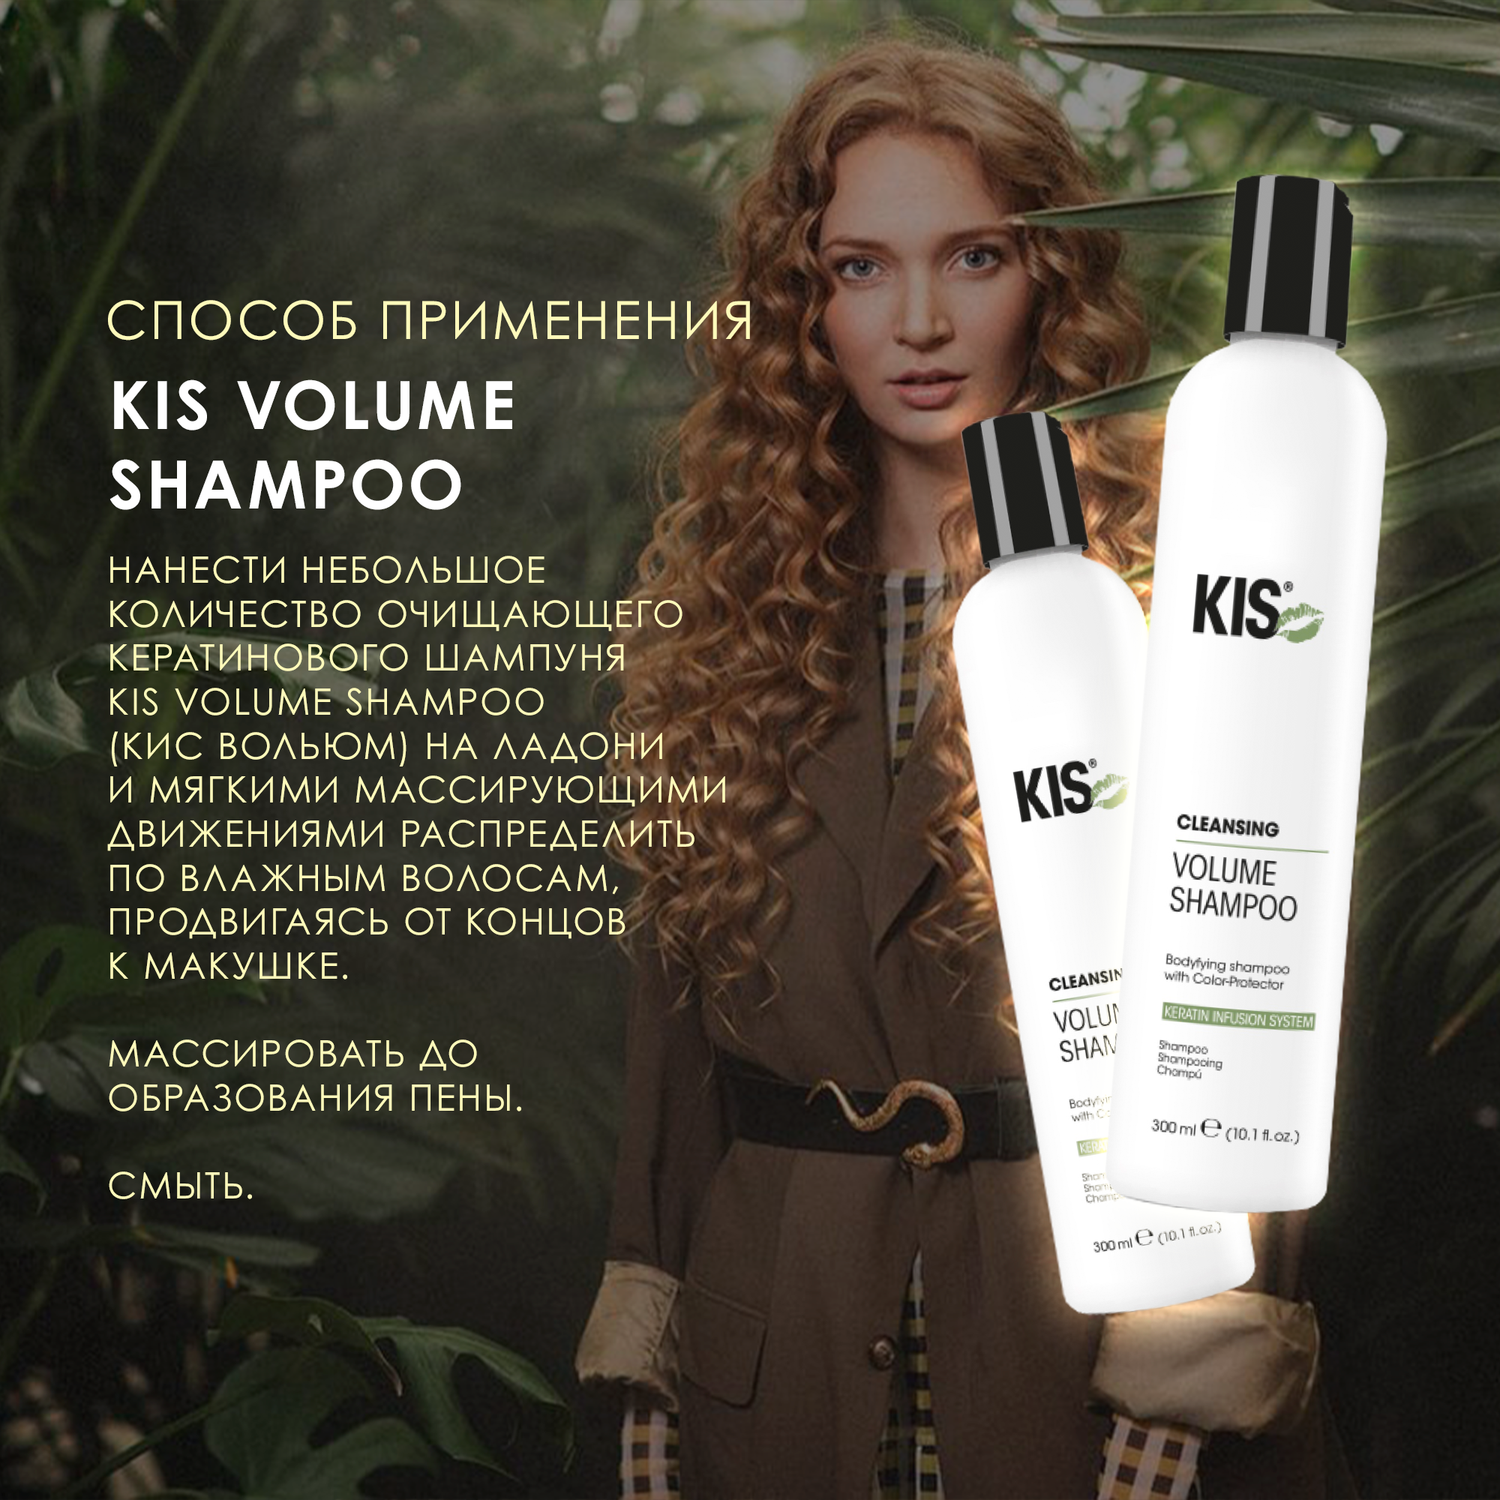 Шампунь KIS KeraClean Volume Shampoo профессиональный кератиновый для объёма - фото 4